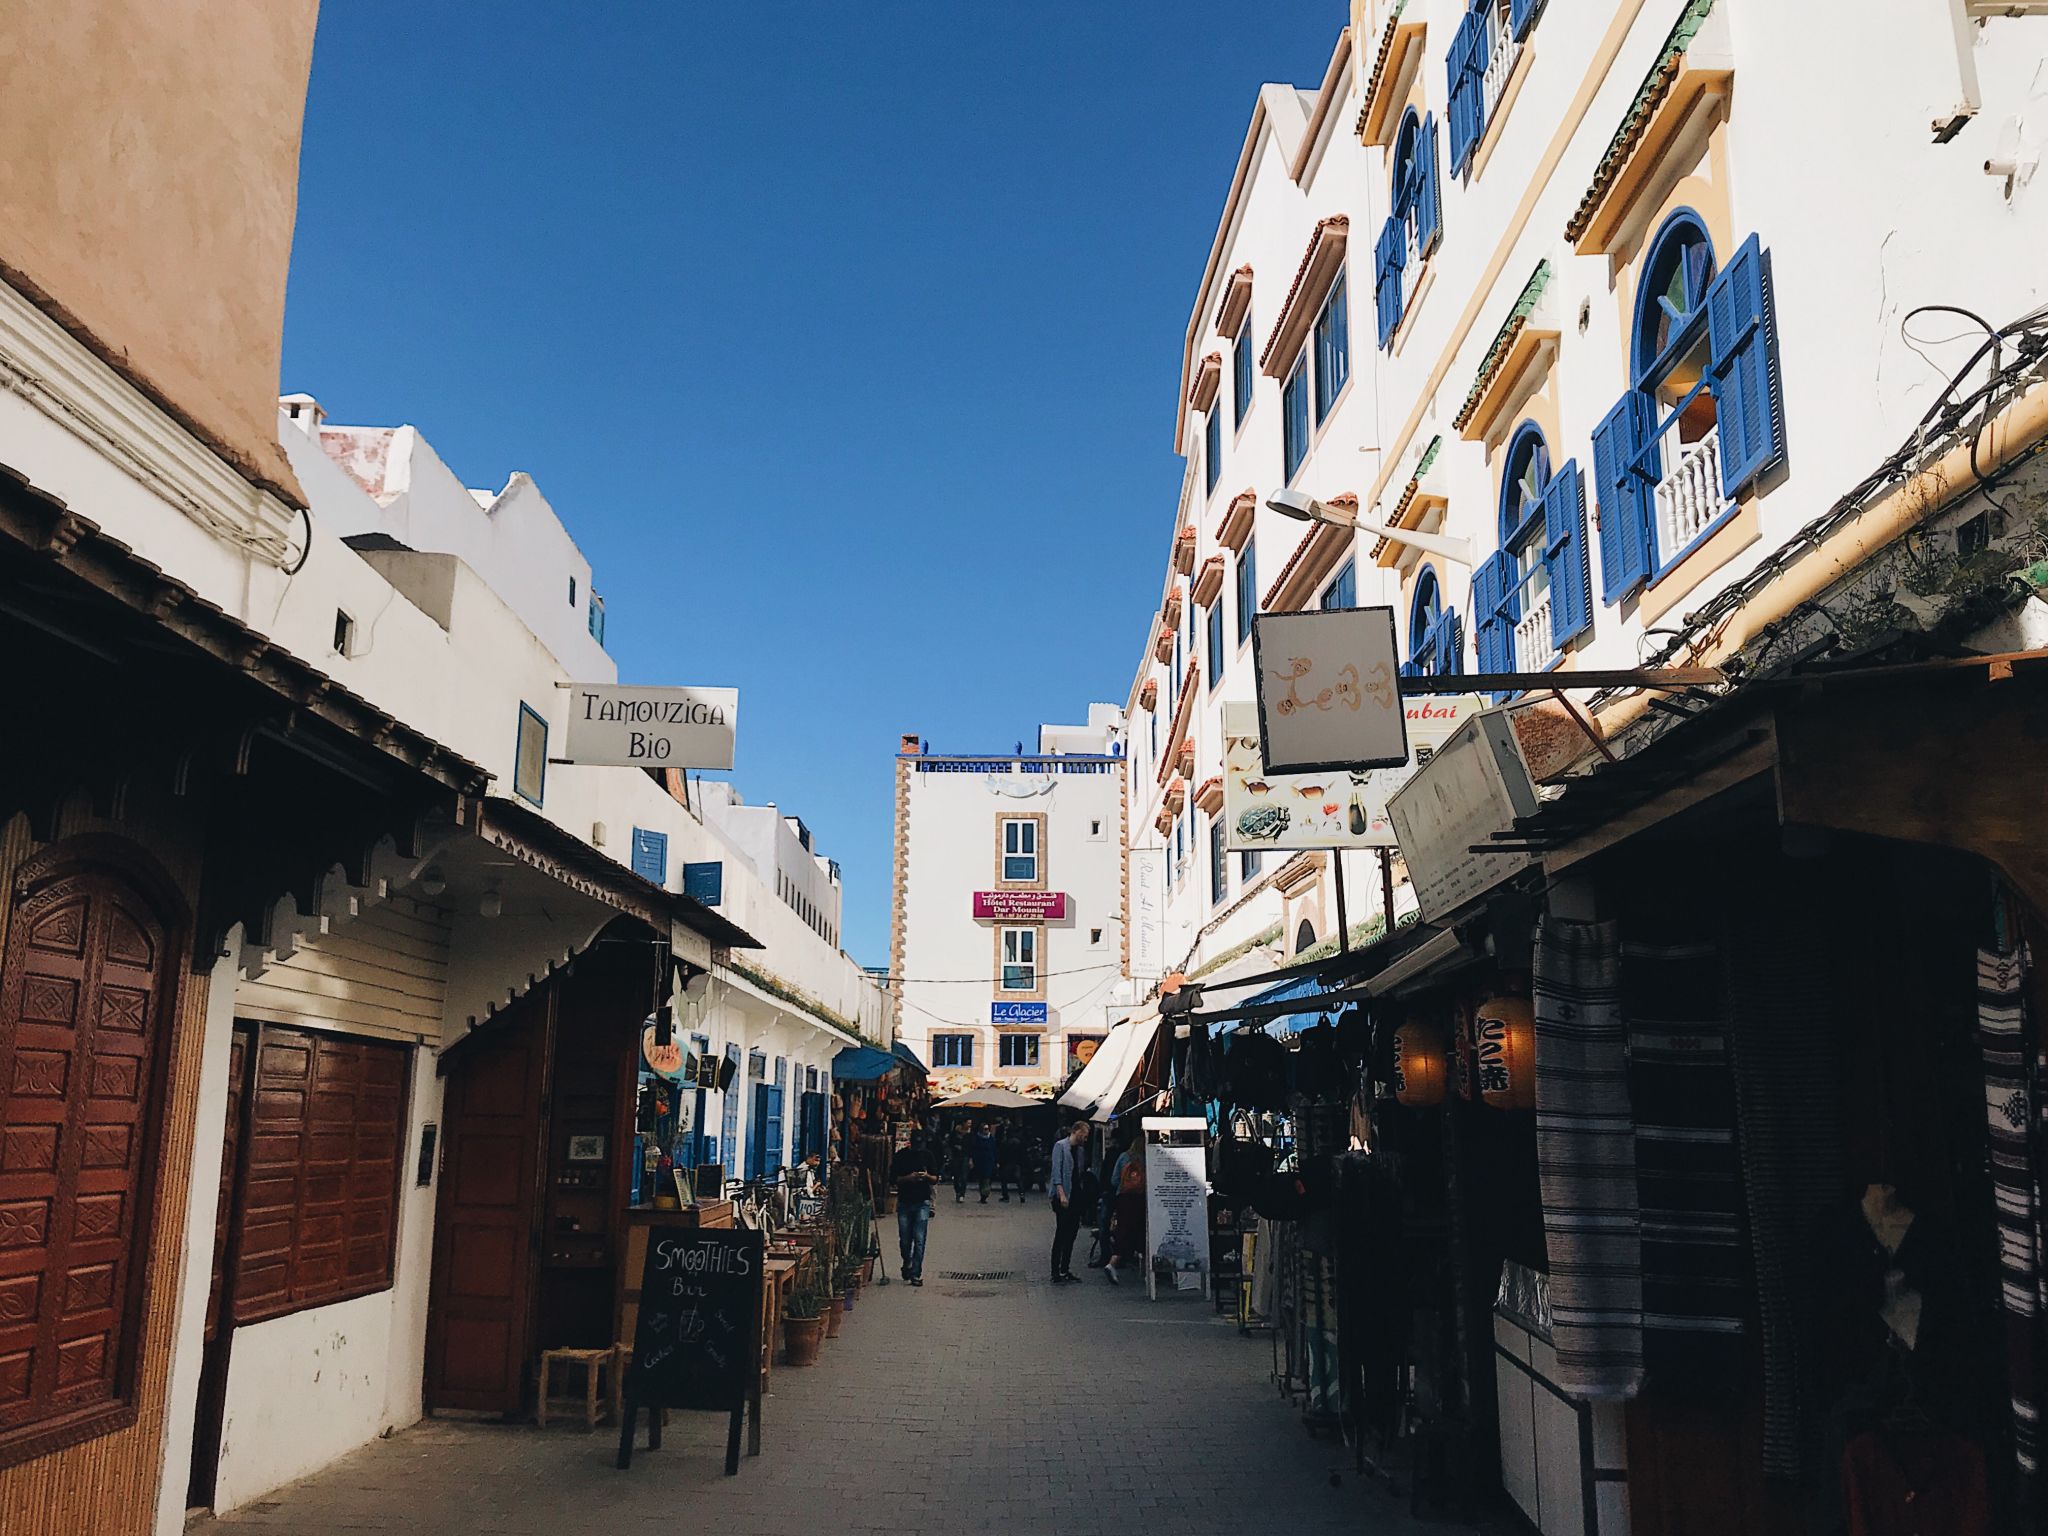 One week in Morocco essaouira